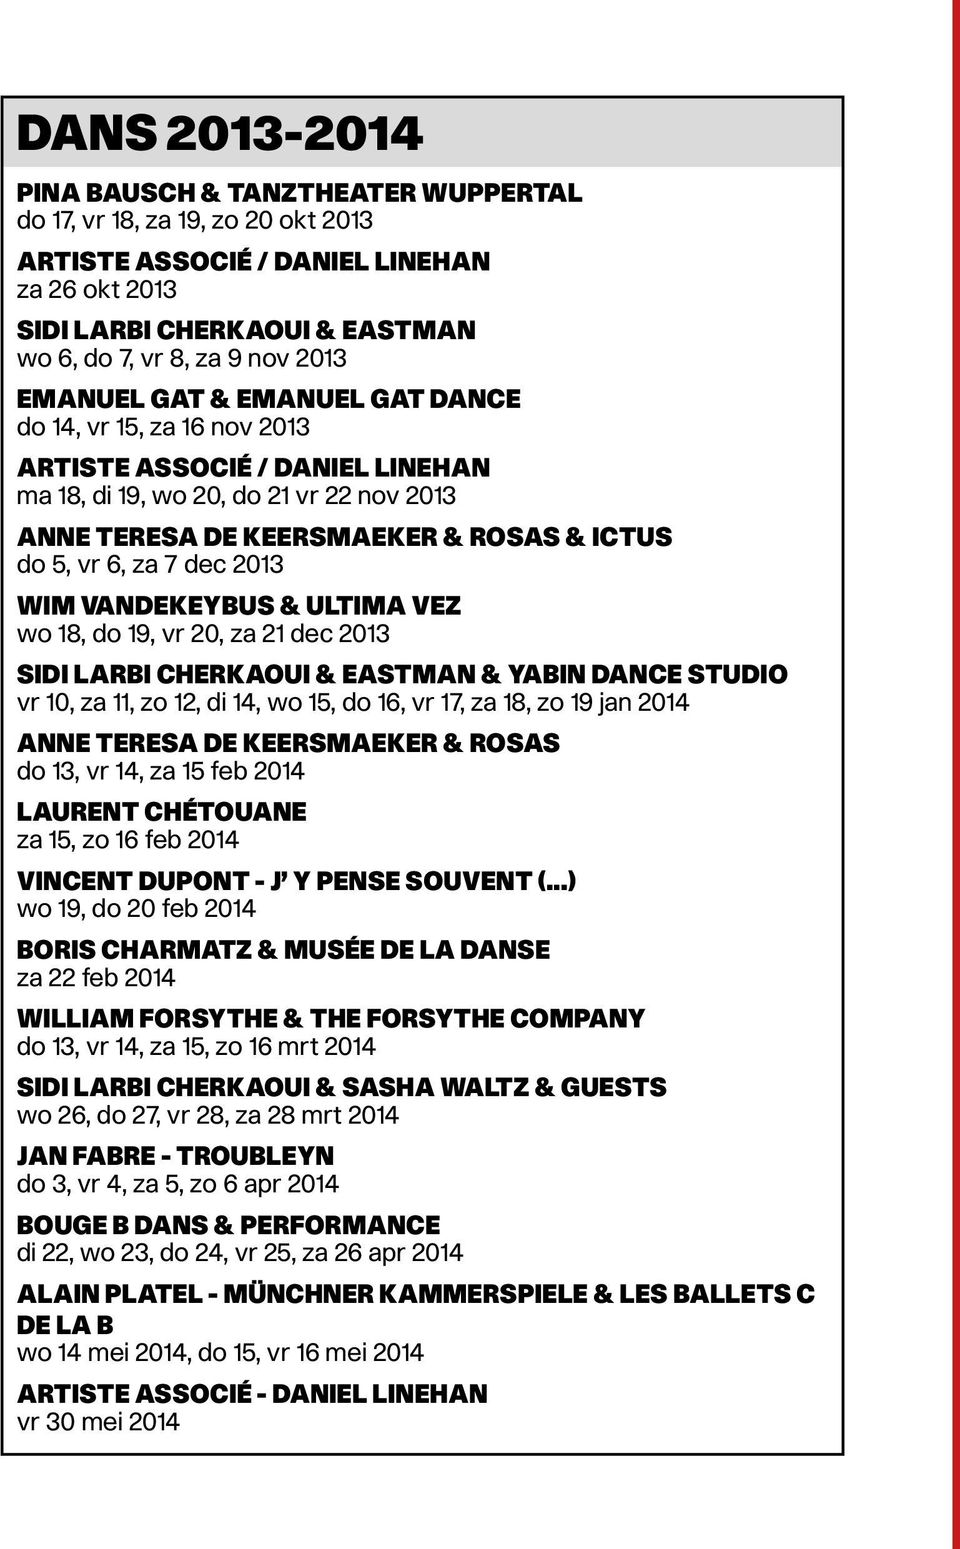 2013 Wim Vandekeybus & Ultima Vez wo 18, do 19, vr 20, za 21 dec 2013 Sidi Larbi Cherkaoui & Eastman & Yabin Dance Studio vr 10, za 11, zo 12, di 14, wo 15, do 16, vr 17, za 18, zo 19 jan 2014 Anne